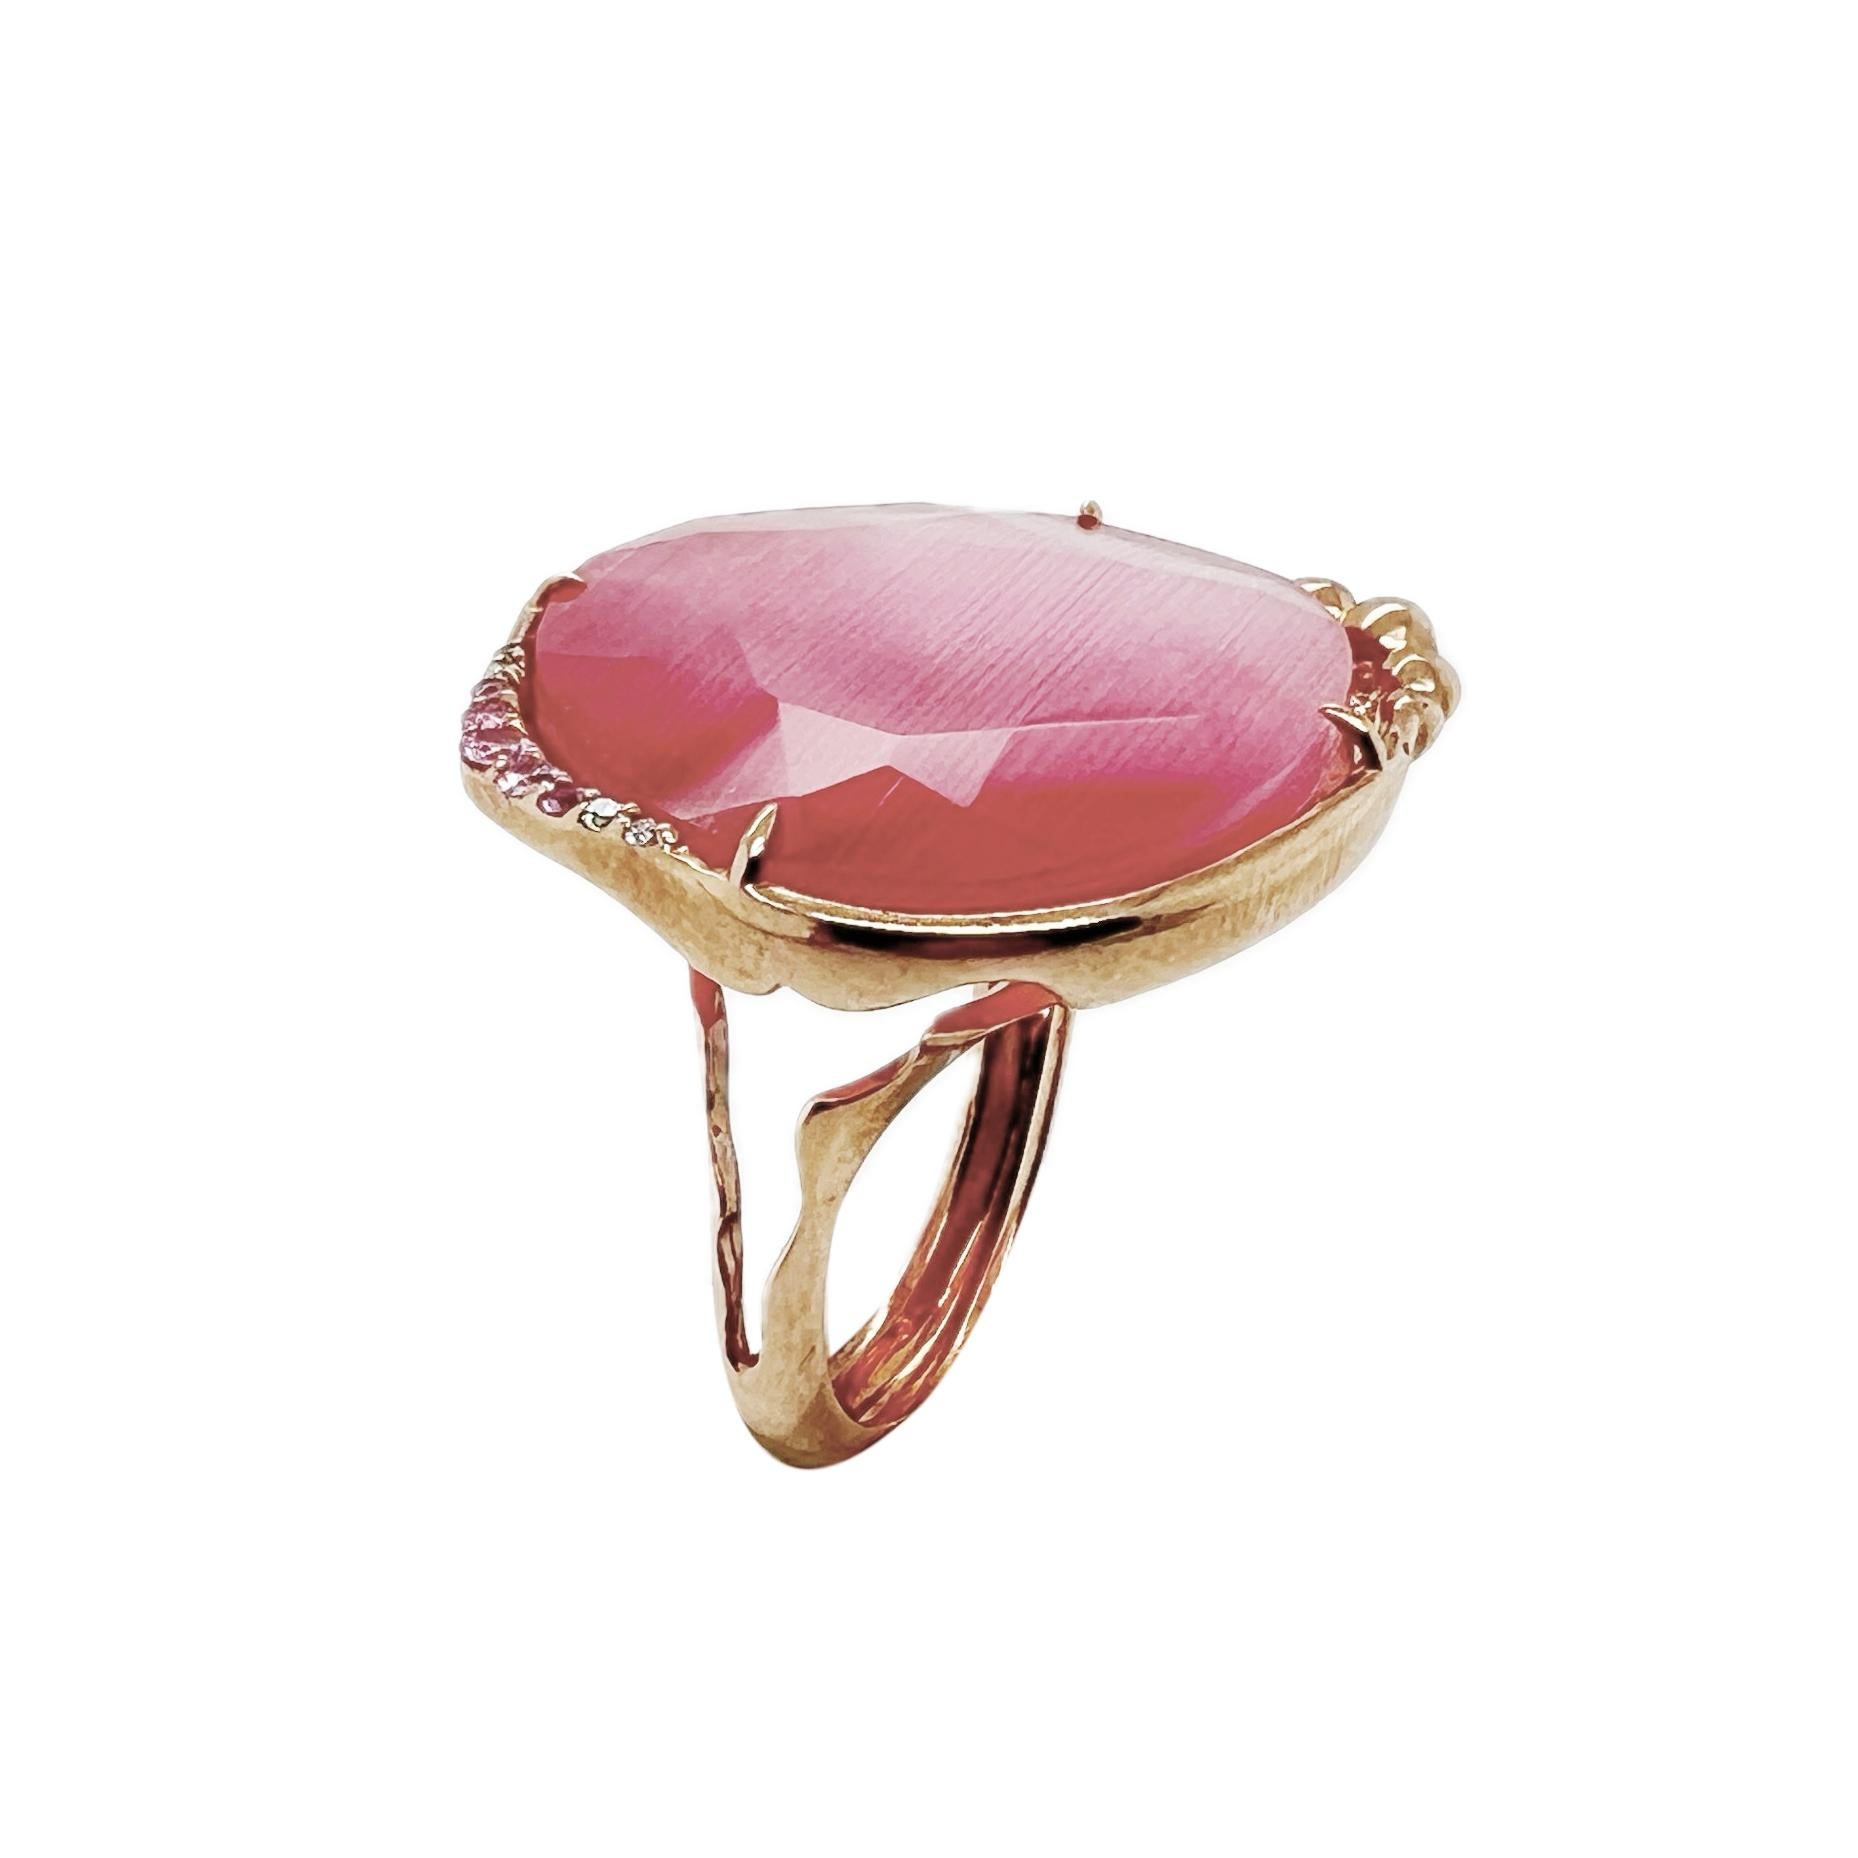 Der Ring der Optic Chic Collection ist ein einzigartiges und modernes Stück, das aus den besten Materialien hergestellt wird. Es verfügt über eine 9K Gold Körper mit weißen natürlichen Diamanten und rosa Saphiren , um einen Hauch von Luxus und